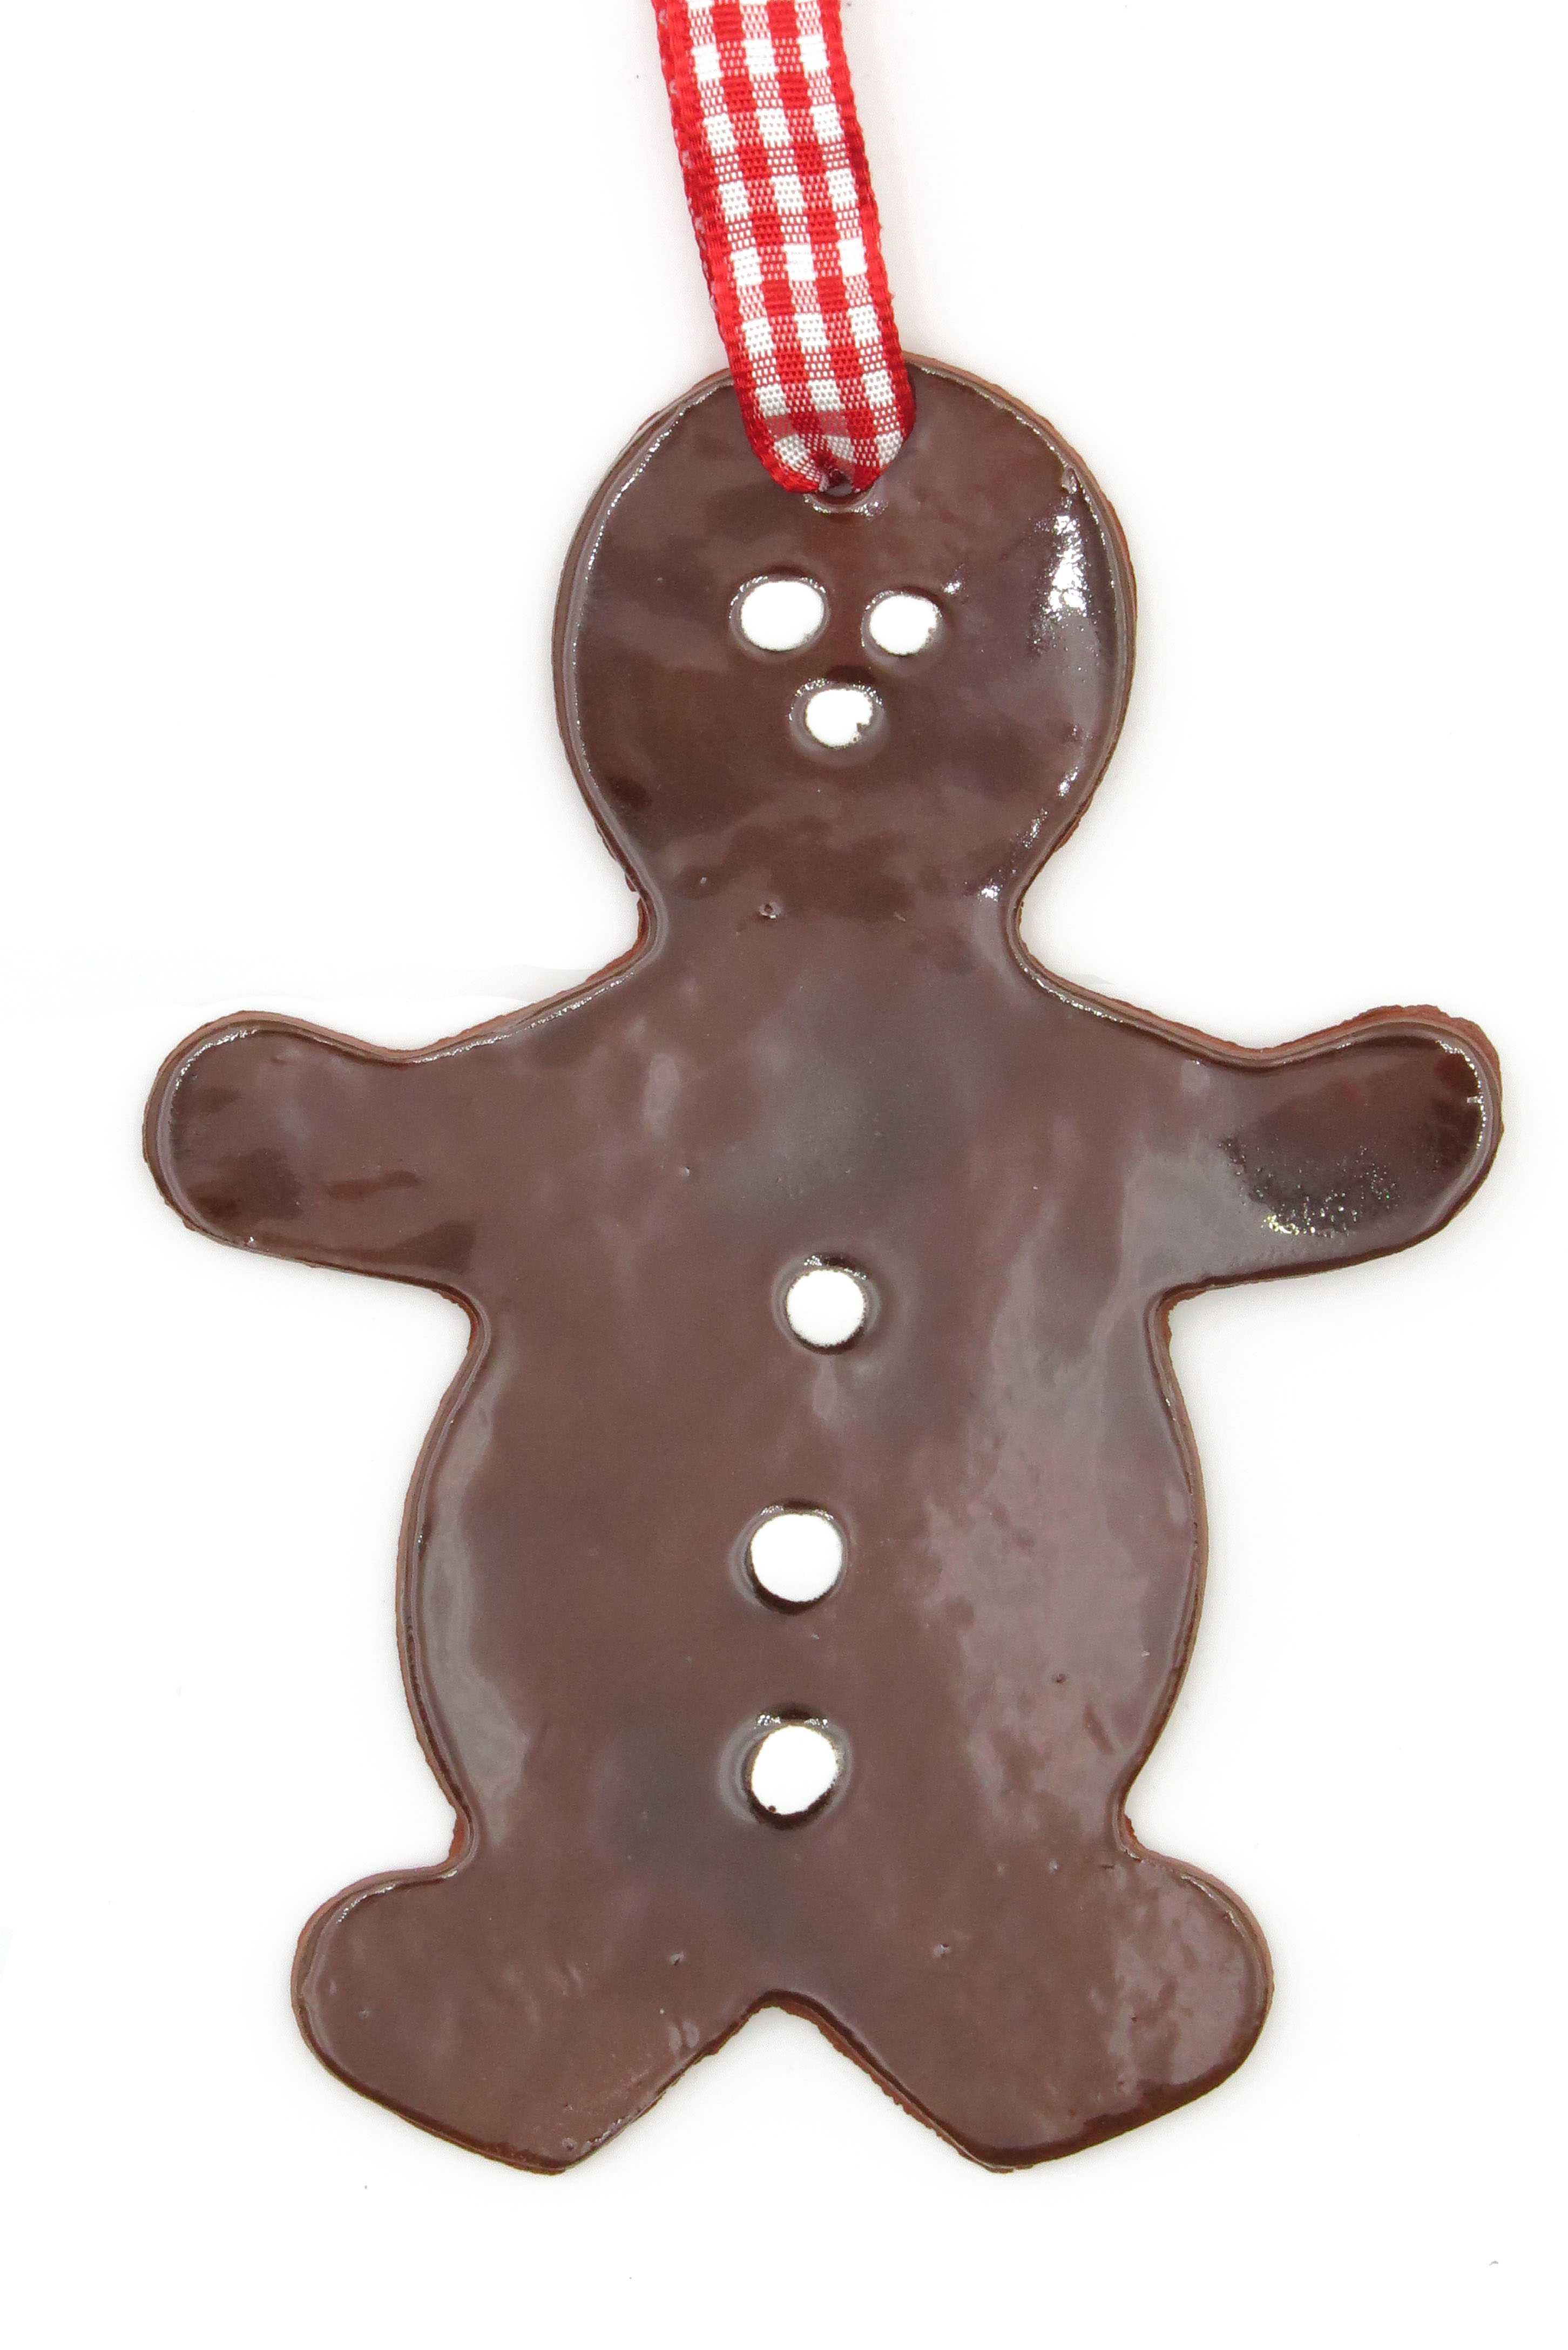  Schoko Lebkuchen Mann mit Zuckerguss Keramik Geschenk Anhänger Weihnachten/L 11,5cm